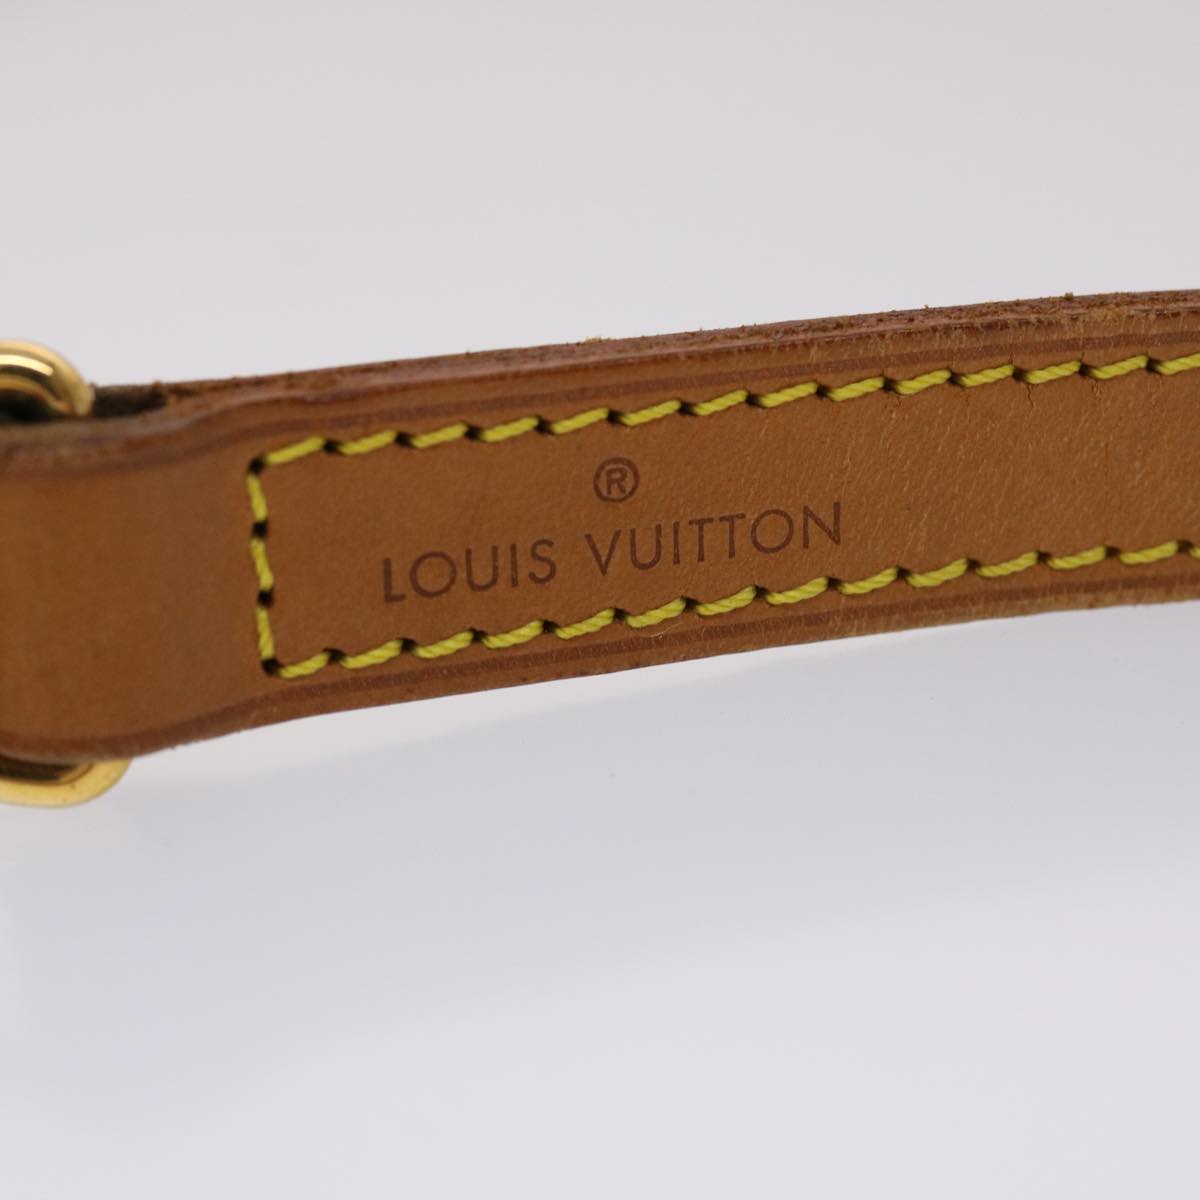 LOUIS VUITTON Shoulder Strap Leather 43.3"" Beige LV Auth 45459